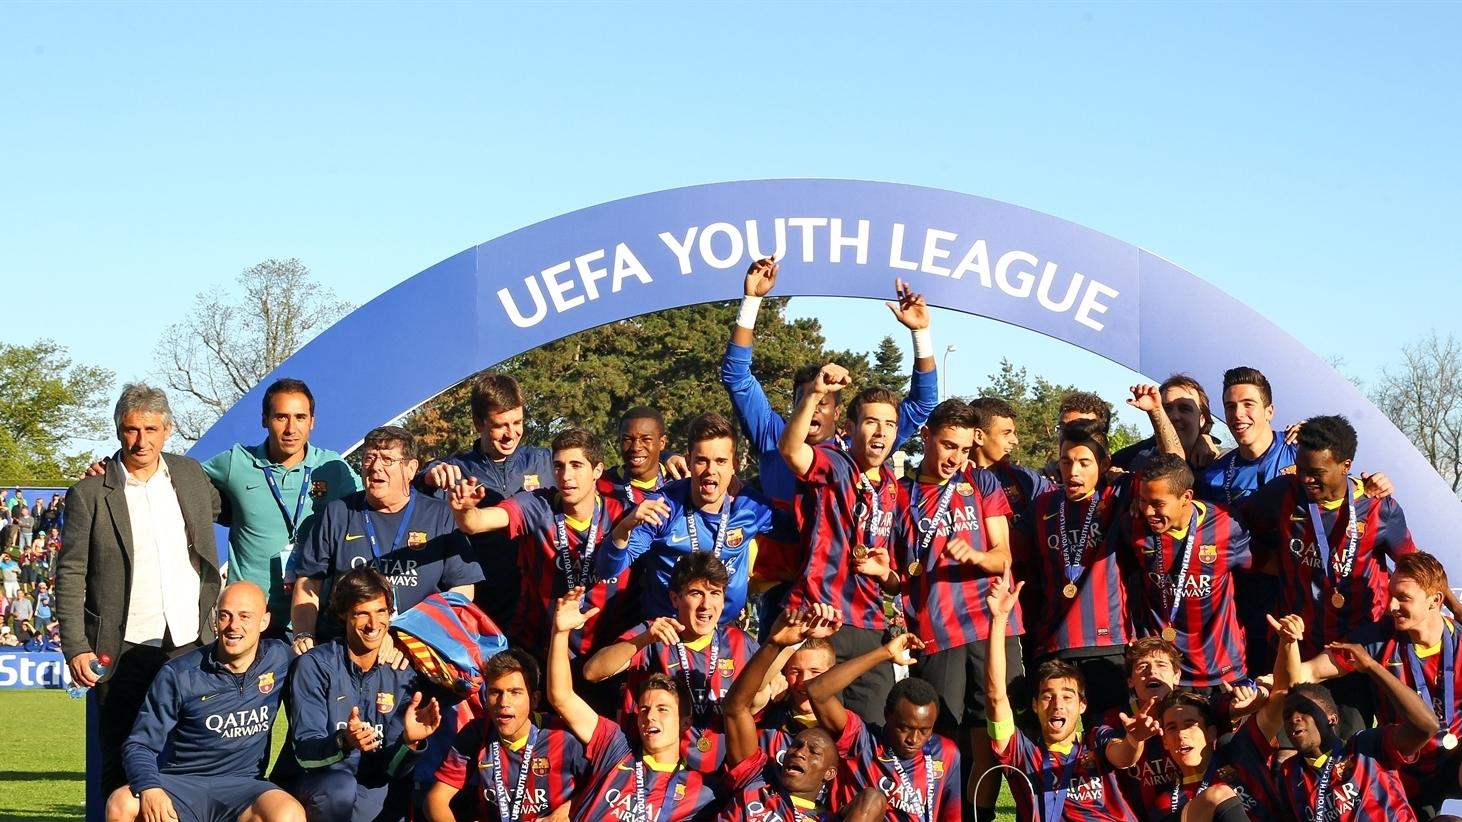 Youth gets its chance to shine UEFA Youth League UEFA